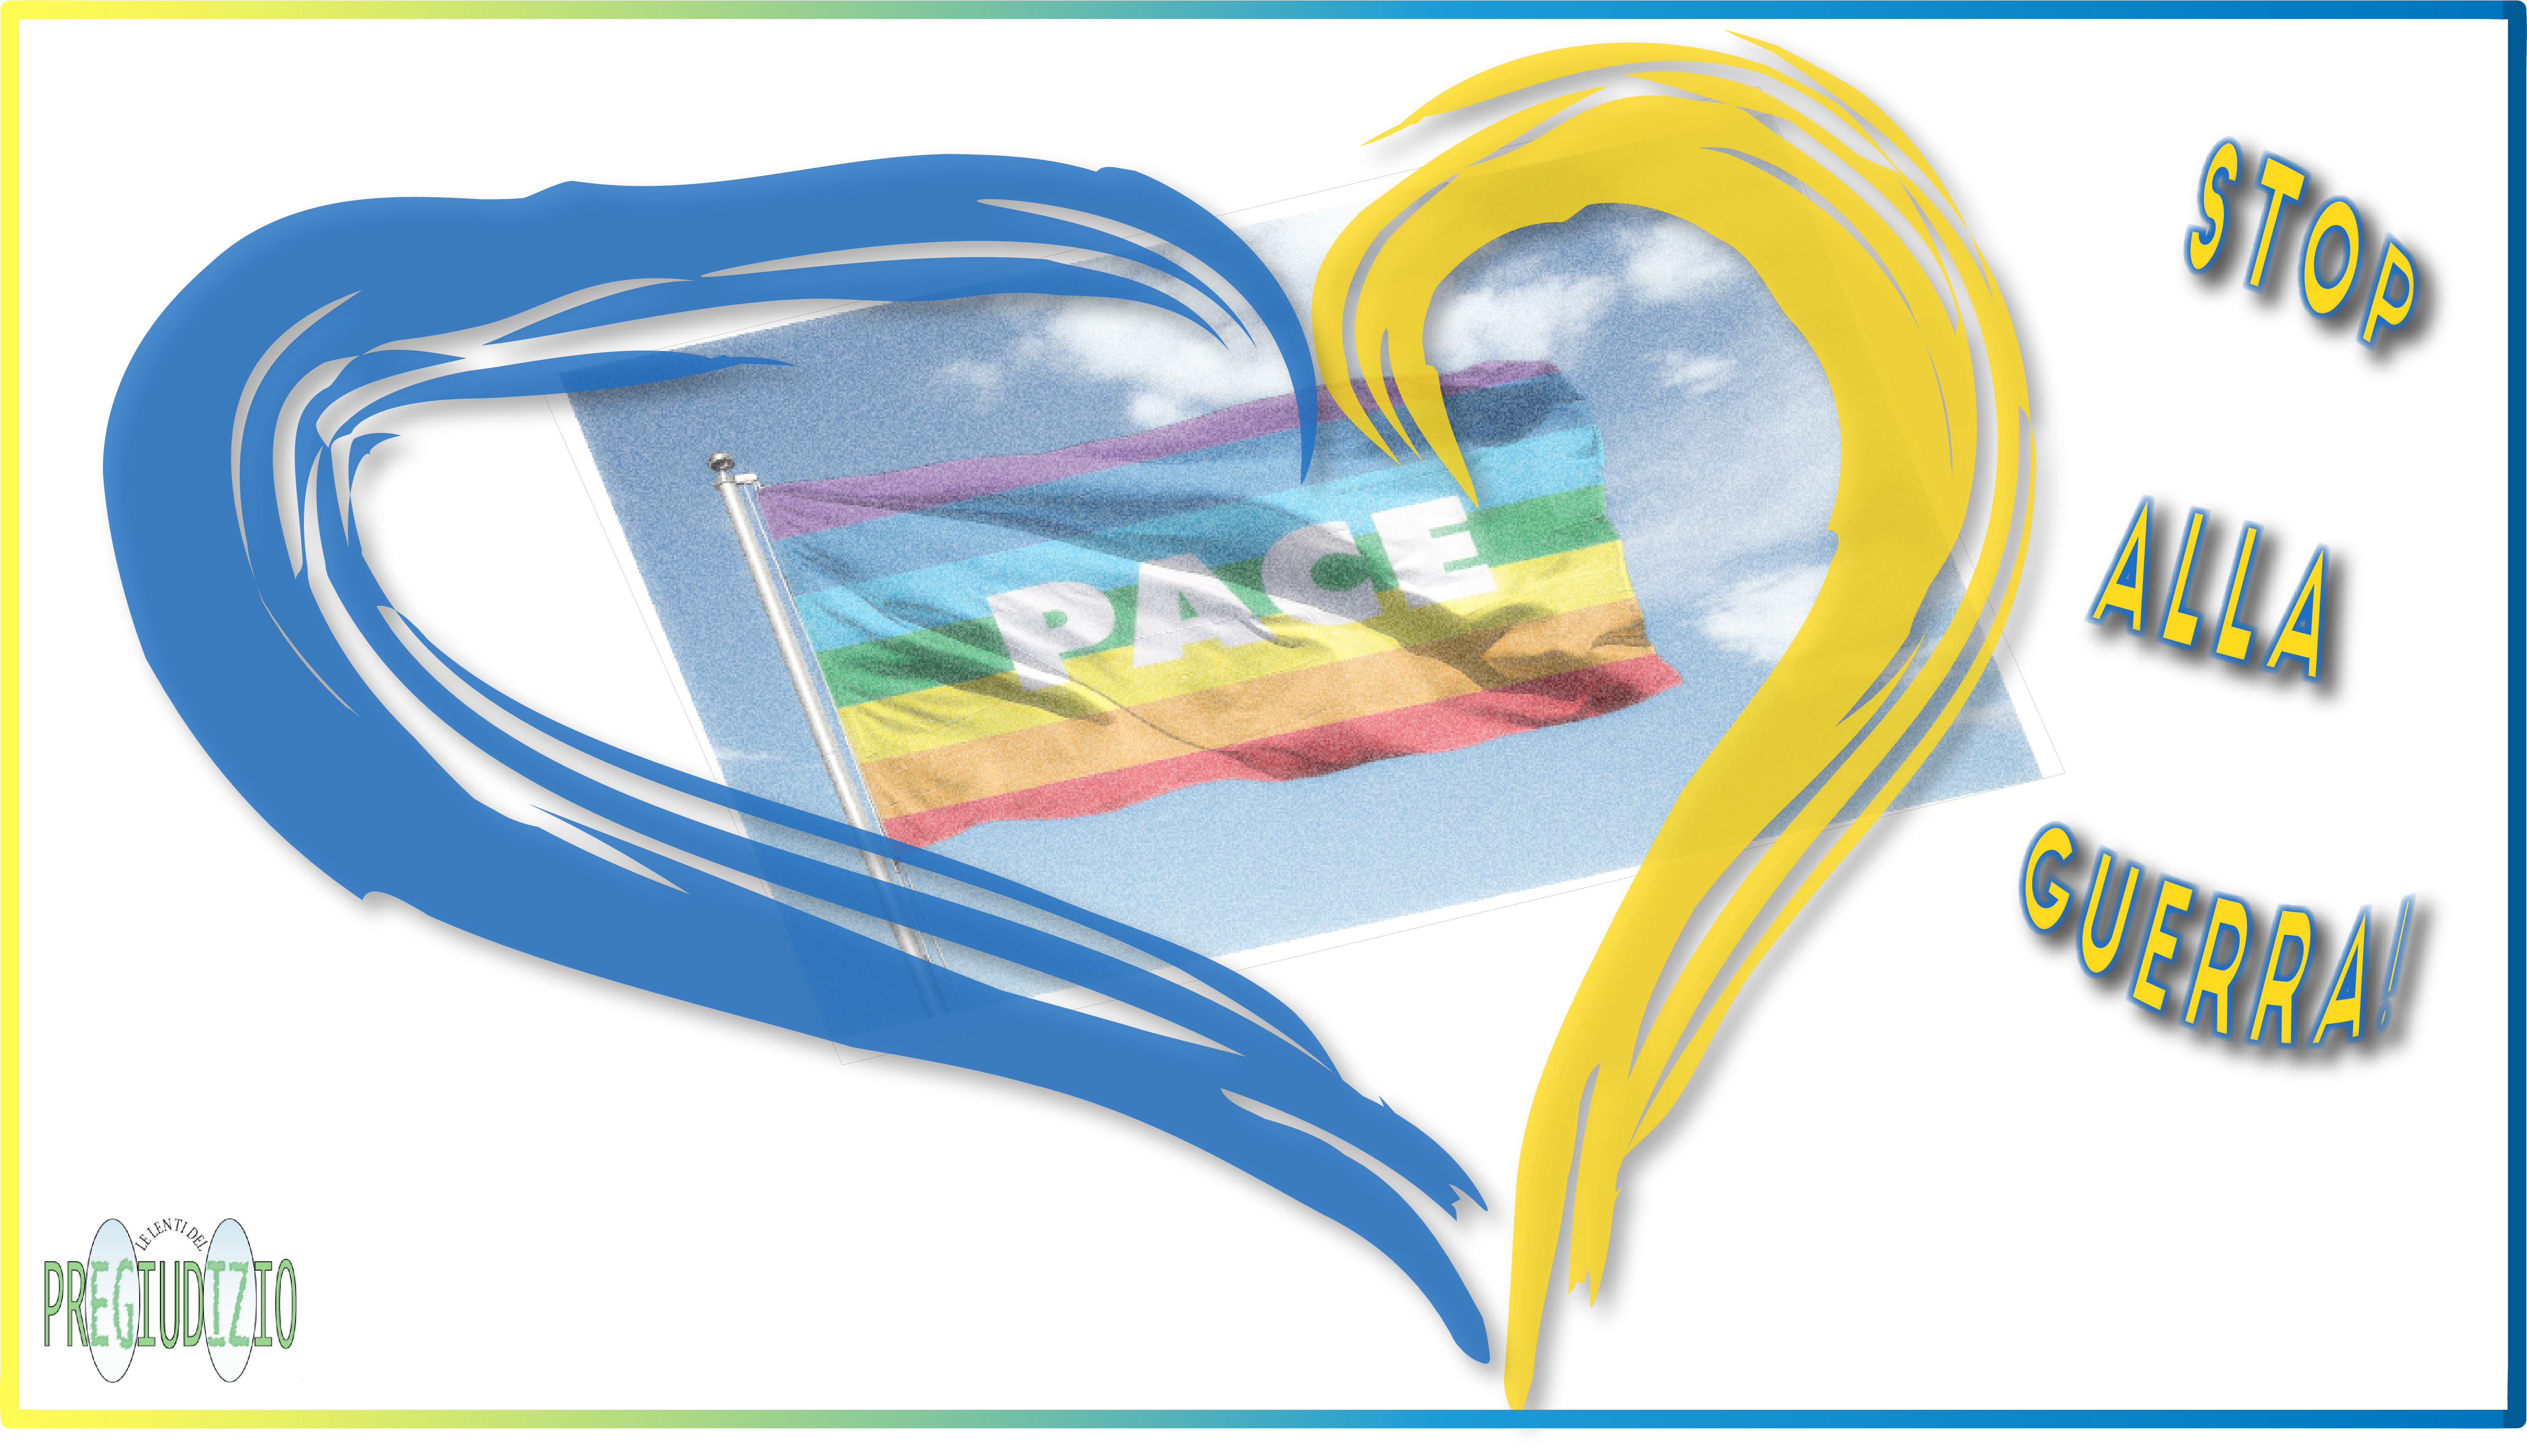 Il disegno stilizzato di un cuore con i colori azzurro e giallo della bandiera Ucraina con all'interno l'immagine della bandiera arcobaleno dello pace nel cielo azzurro. A destra la scritta "Stop alla guerra"